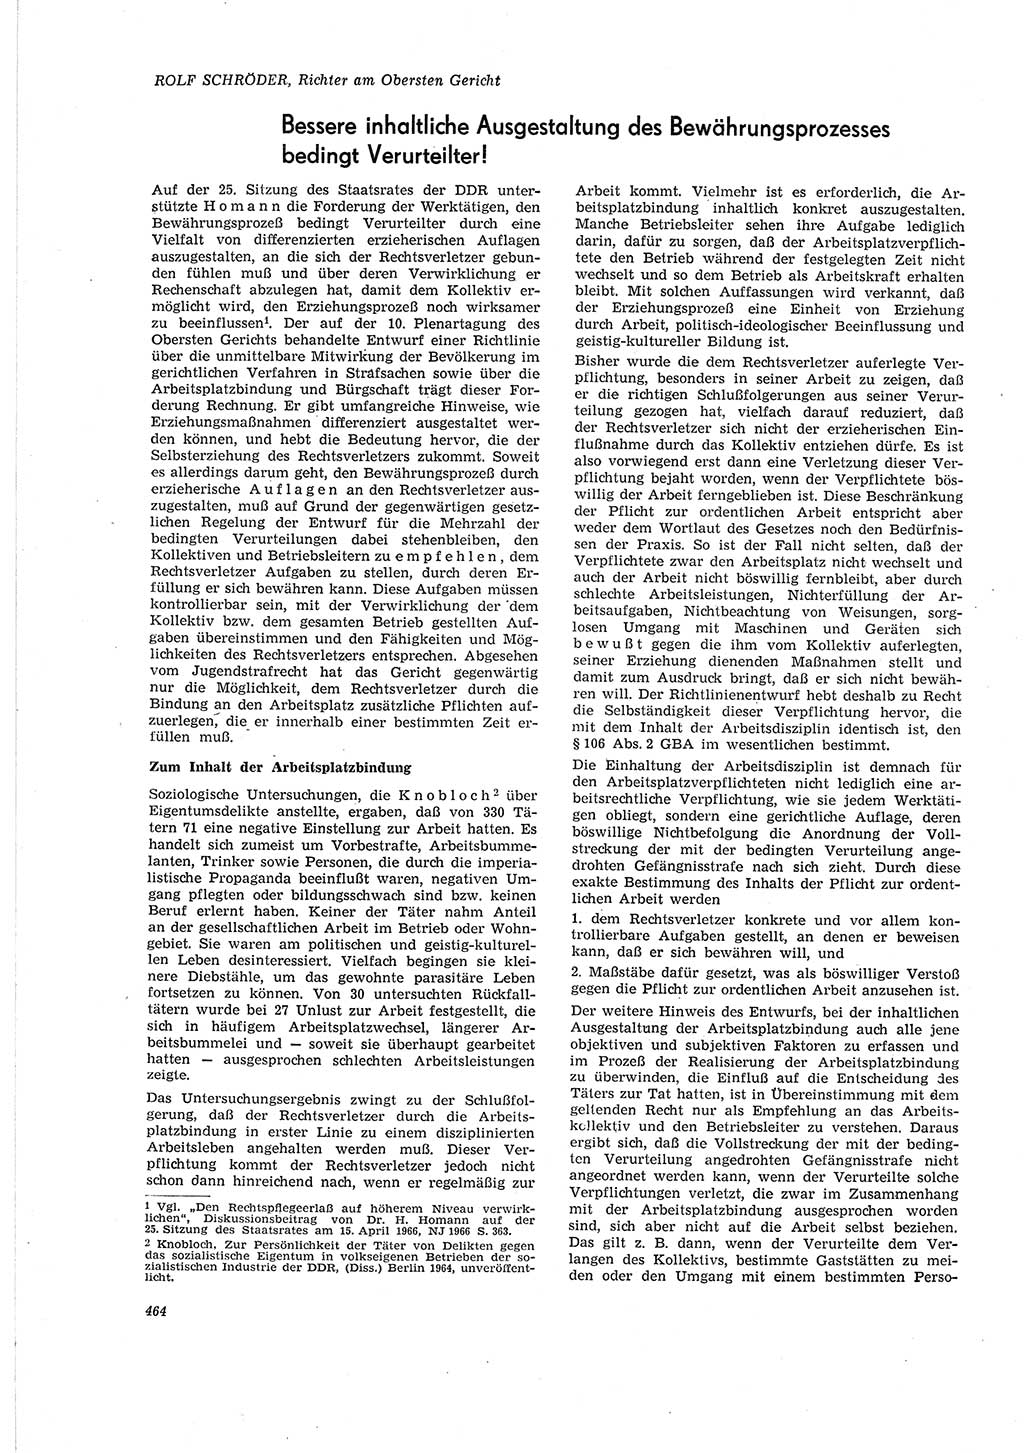 Neue Justiz (NJ), Zeitschrift für Recht und Rechtswissenschaft [Deutsche Demokratische Republik (DDR)], 20. Jahrgang 1966, Seite 464 (NJ DDR 1966, S. 464)